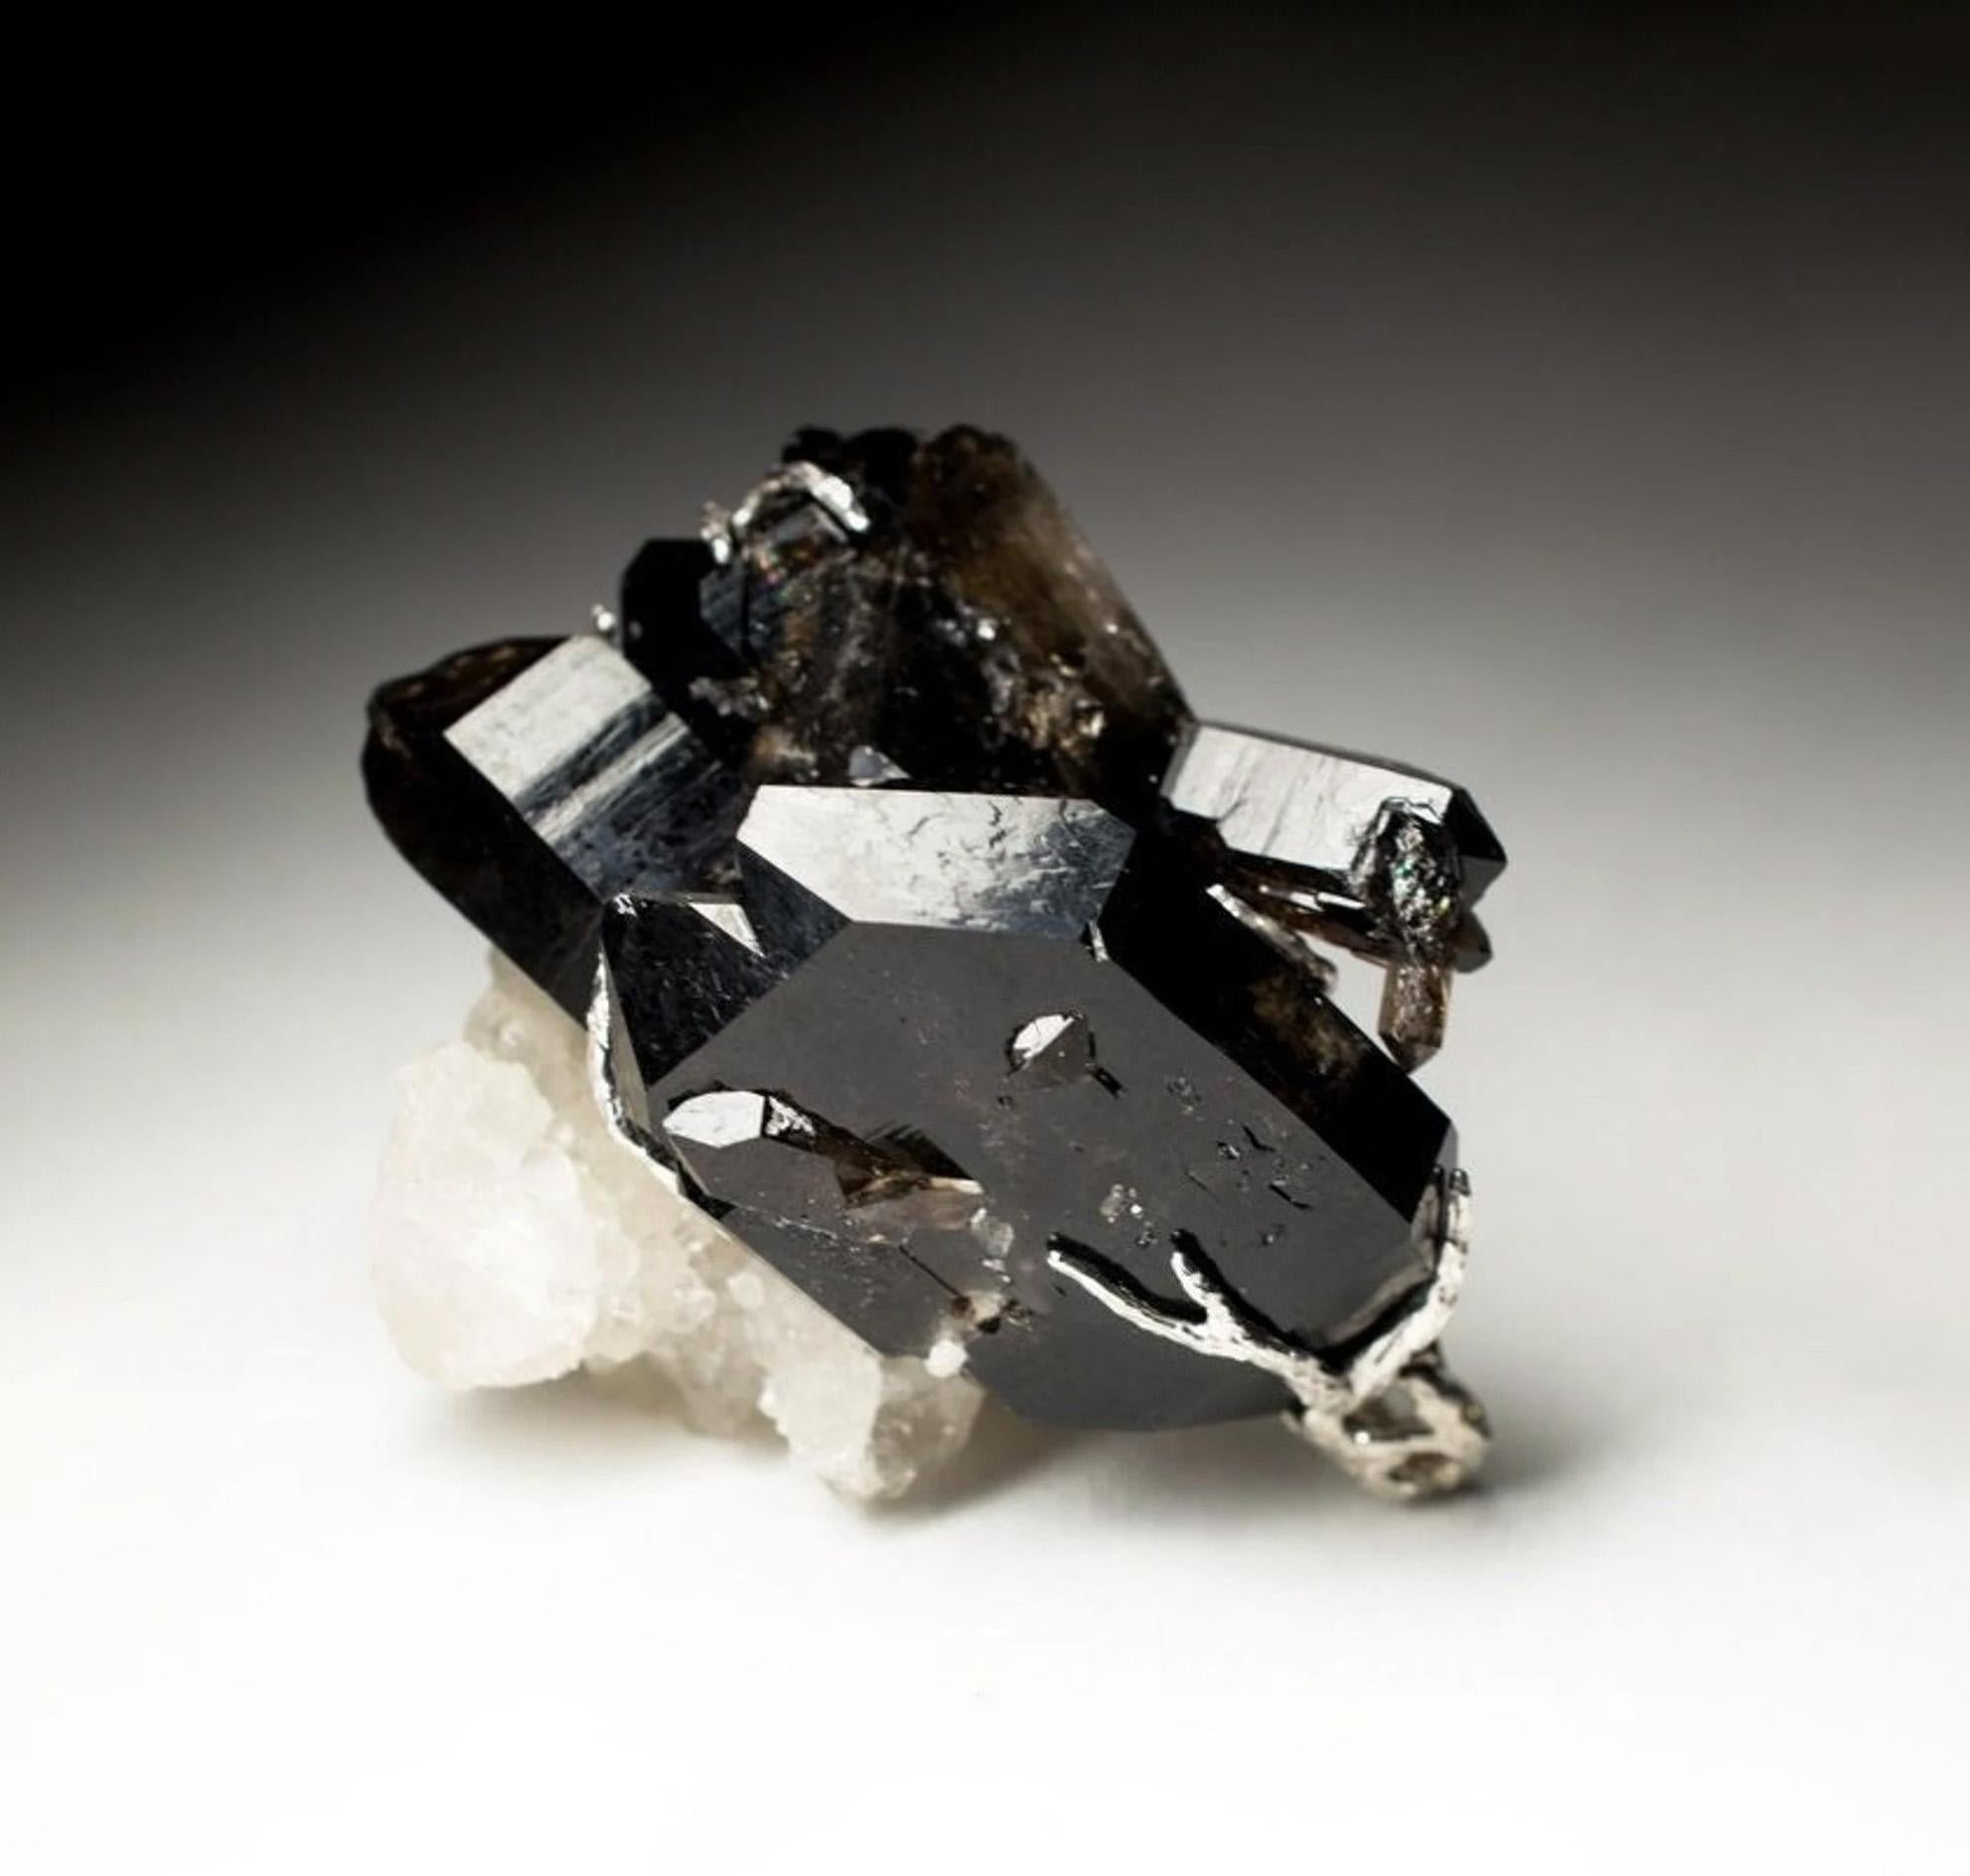 Large silver pendant with natural black Quartz Morion
crystal measurements - 0.87 х 1.26 х 1.89 in / 22 х 32 х 48 mm 
morion weight - 133.9 carats
pendant weight - 30.85 grams
pendant height - 1.97 in / 50 mm